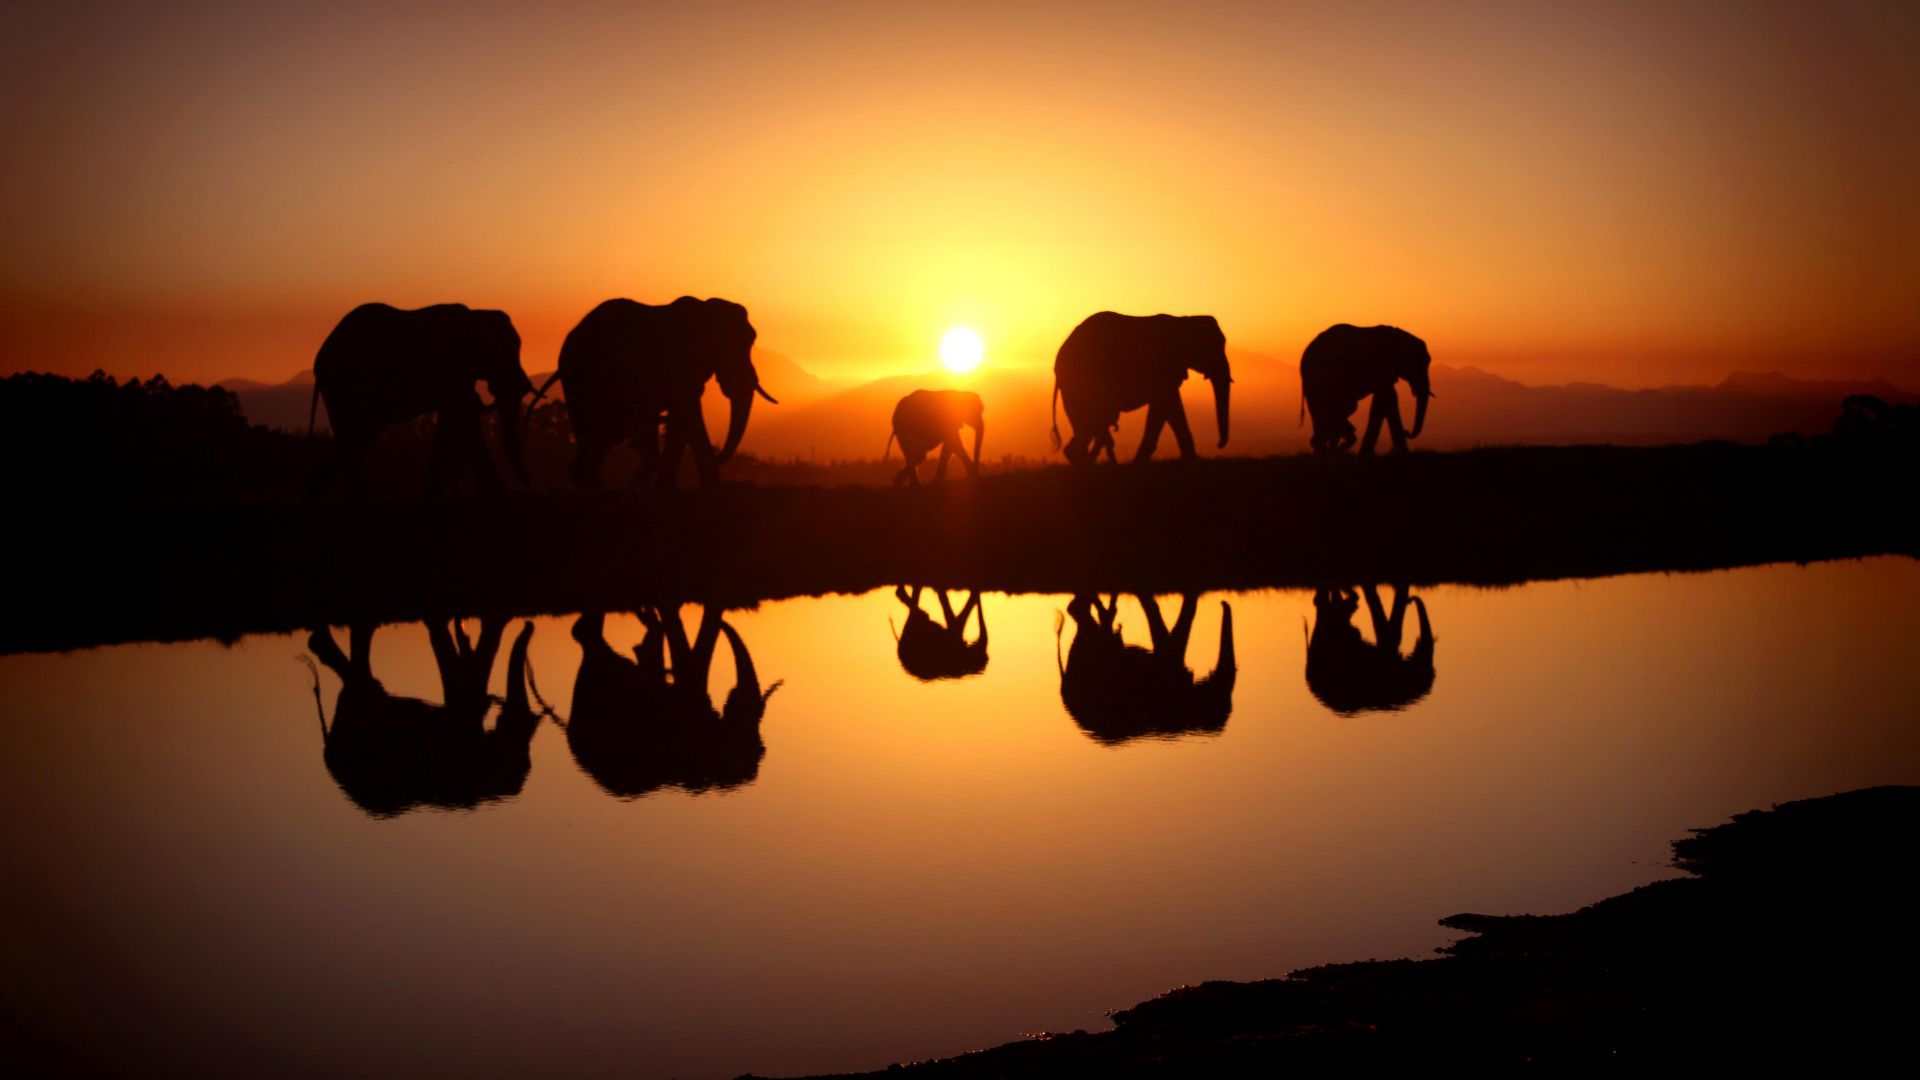 Elephant, sunset, water (horizontal)